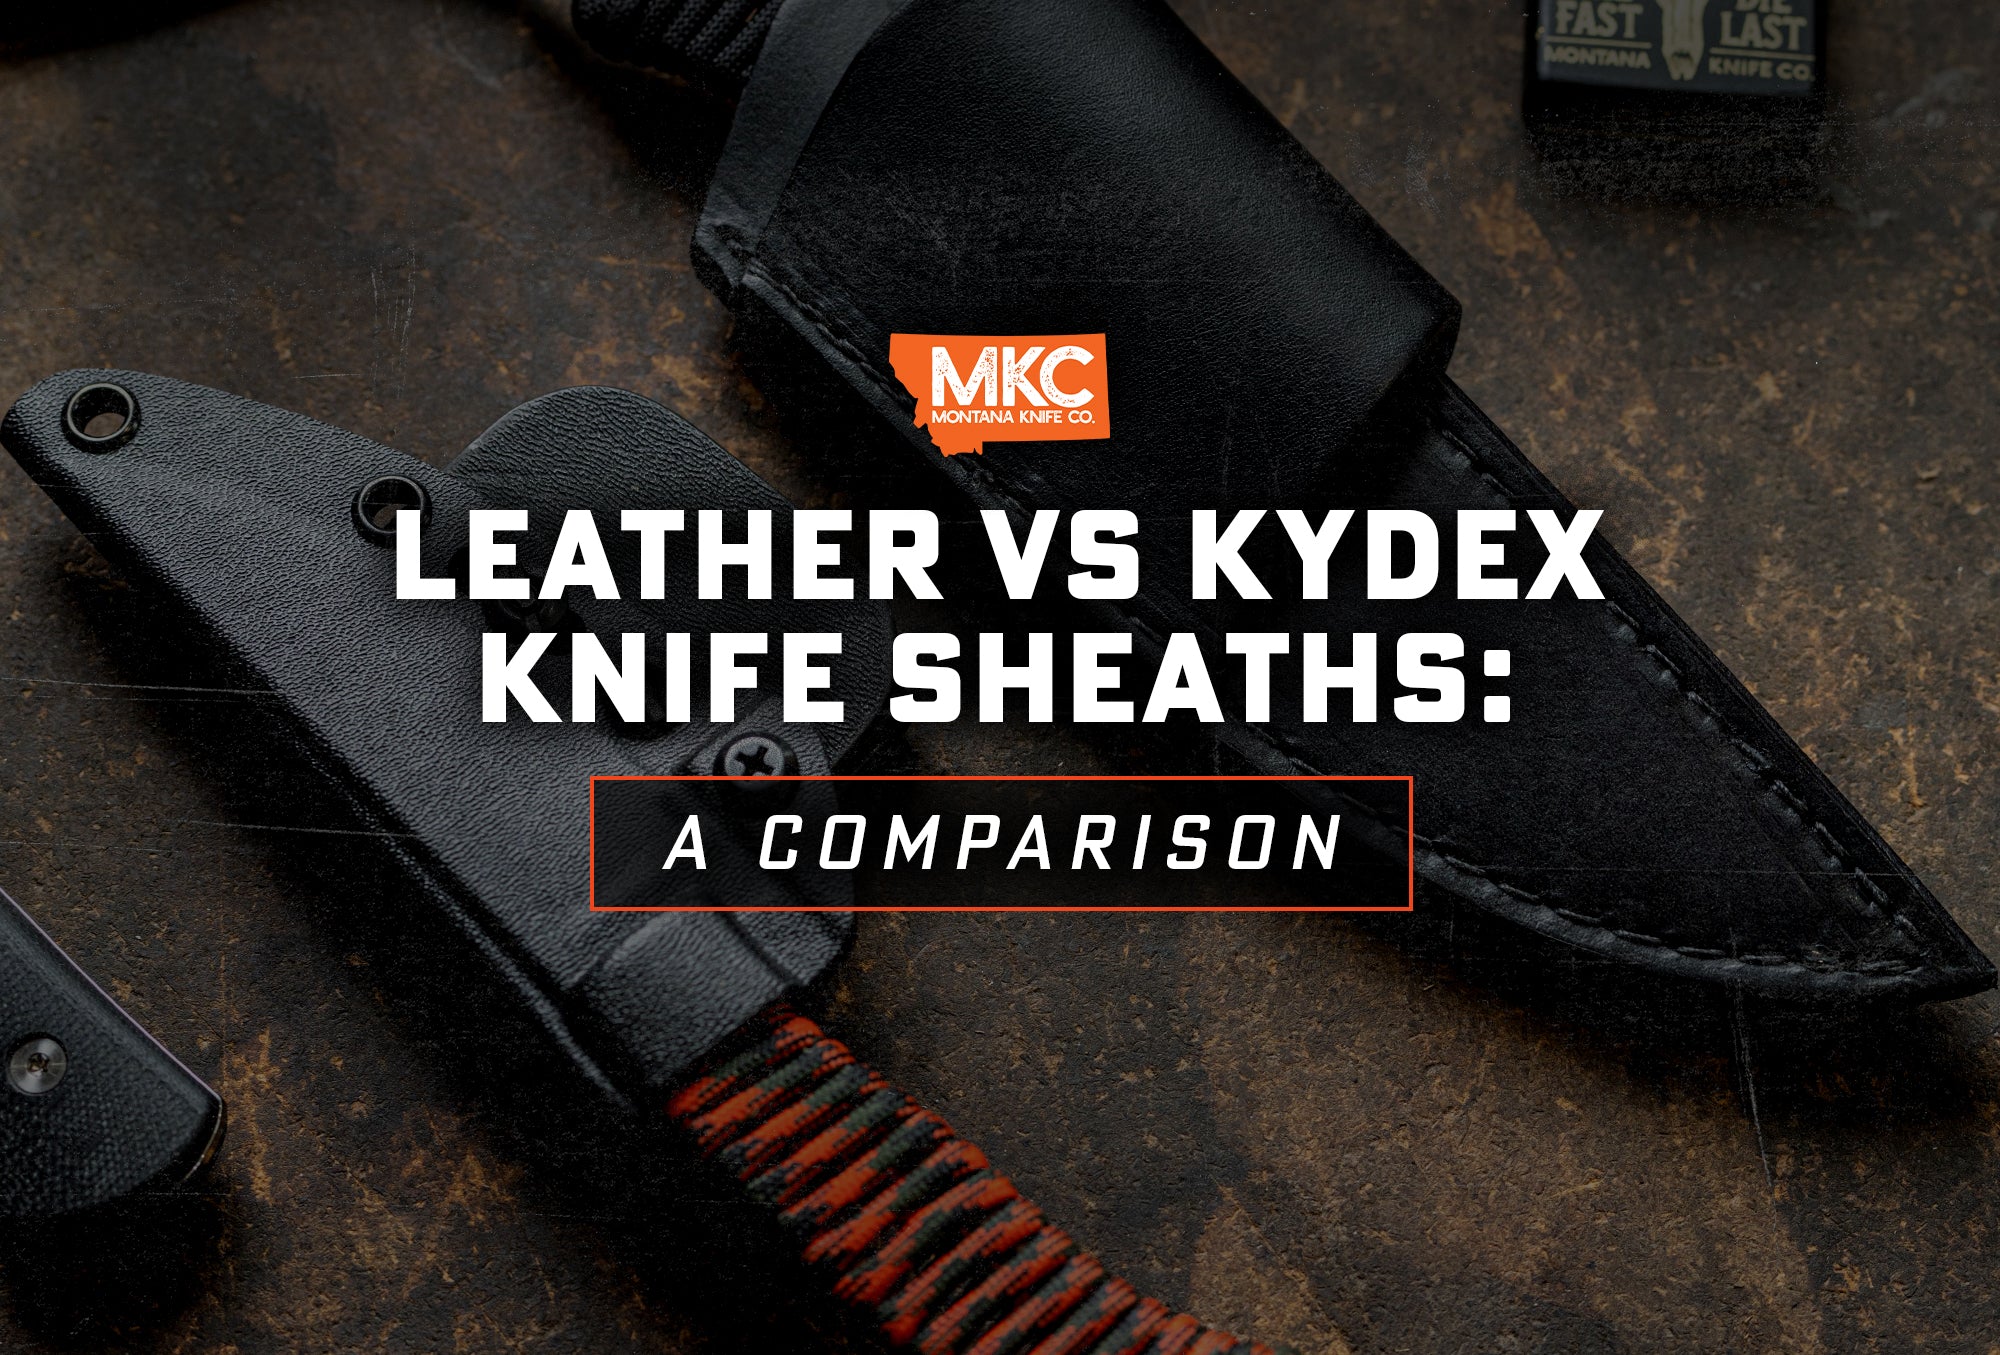 kydex kit. knife sheath holster making kit. everything you need.